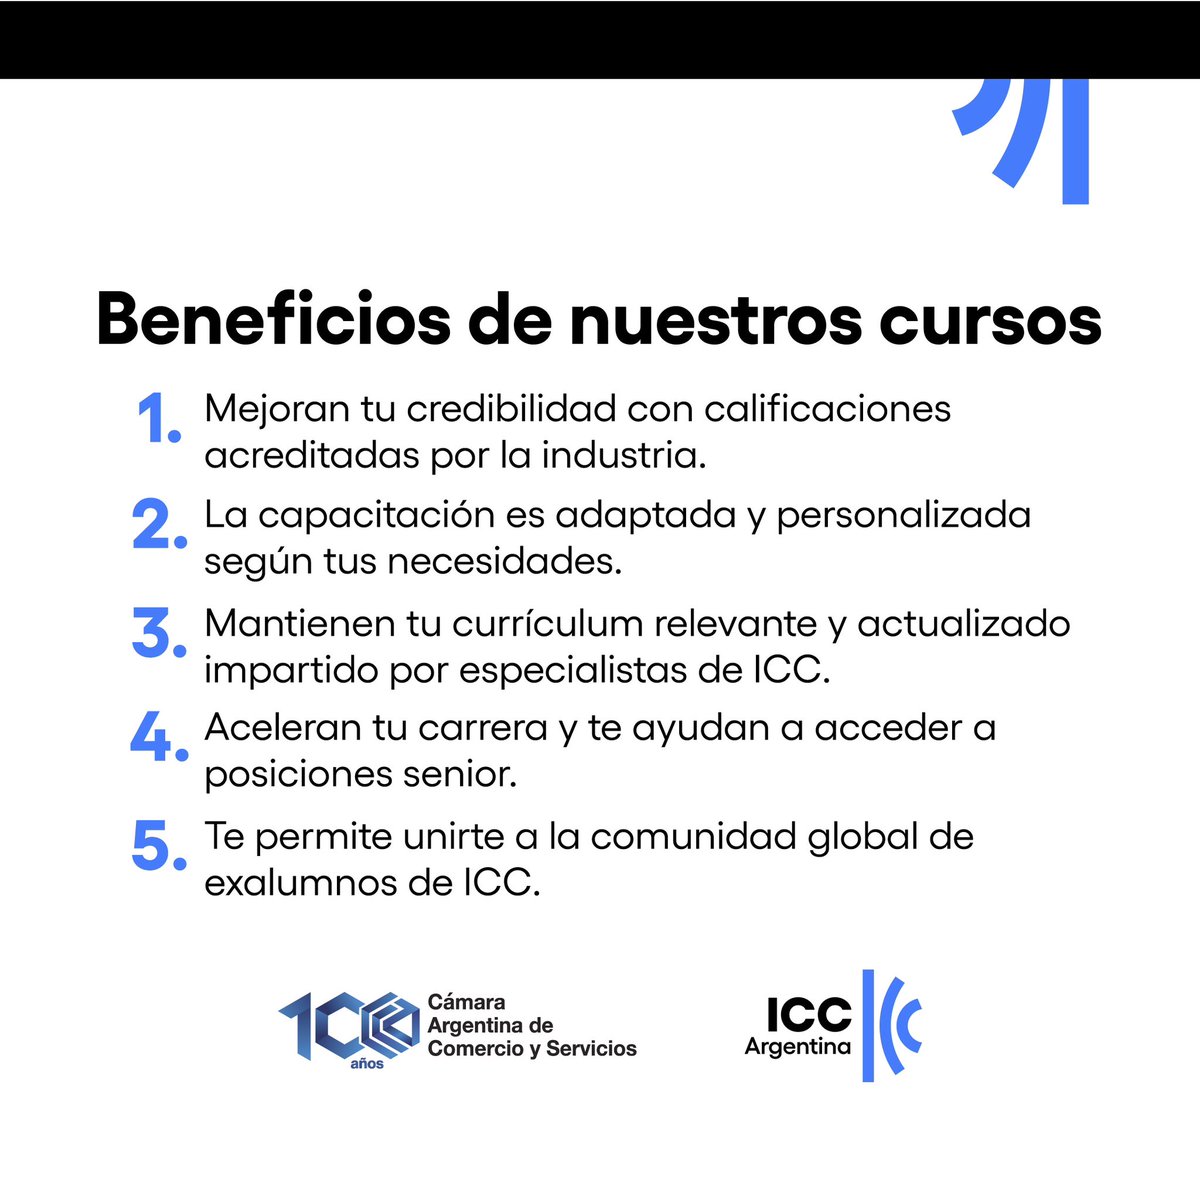 🔵Actualmente, la ICC Academy tiene 951 graduados de 91 países, incluyendo de argentina. 

Sumate en: icc.academy

#ICCArgentina #ICCAcademy